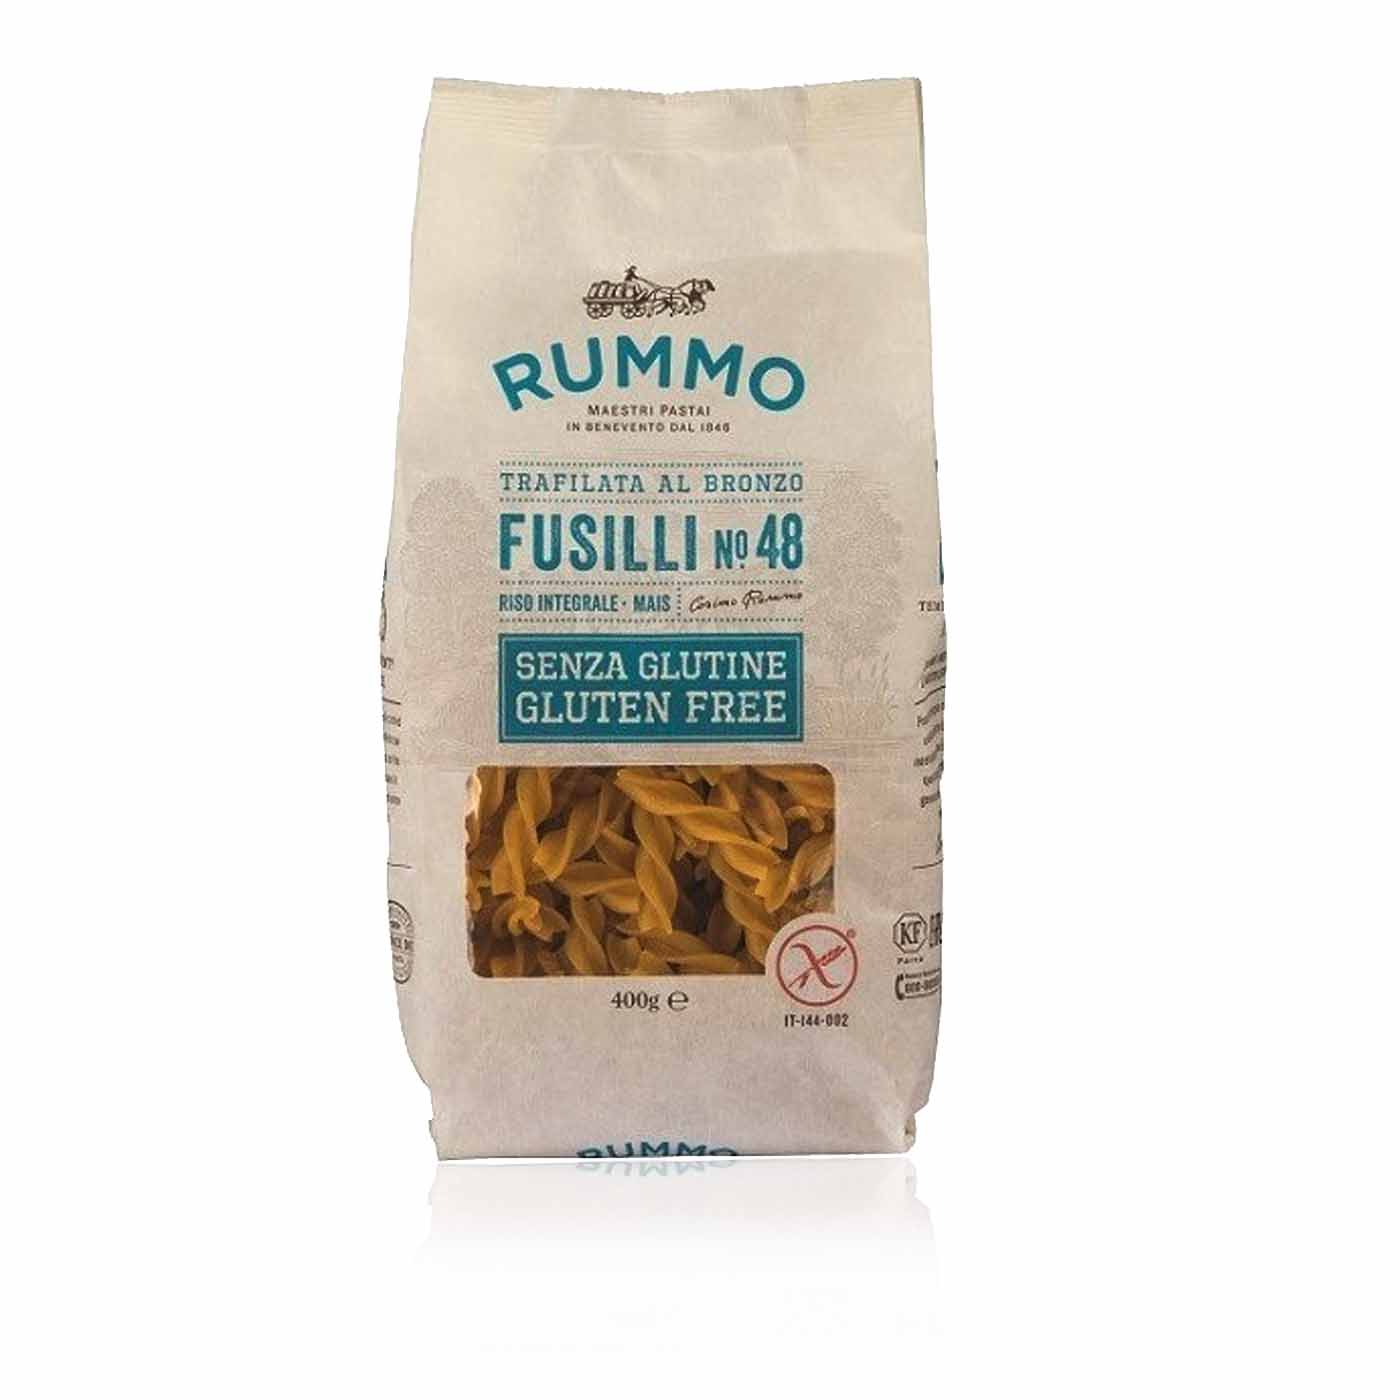 RUMMO - Fusilli No. 48 senza glutine - glutenfrei - 400g - italienisch-einkaufen.de